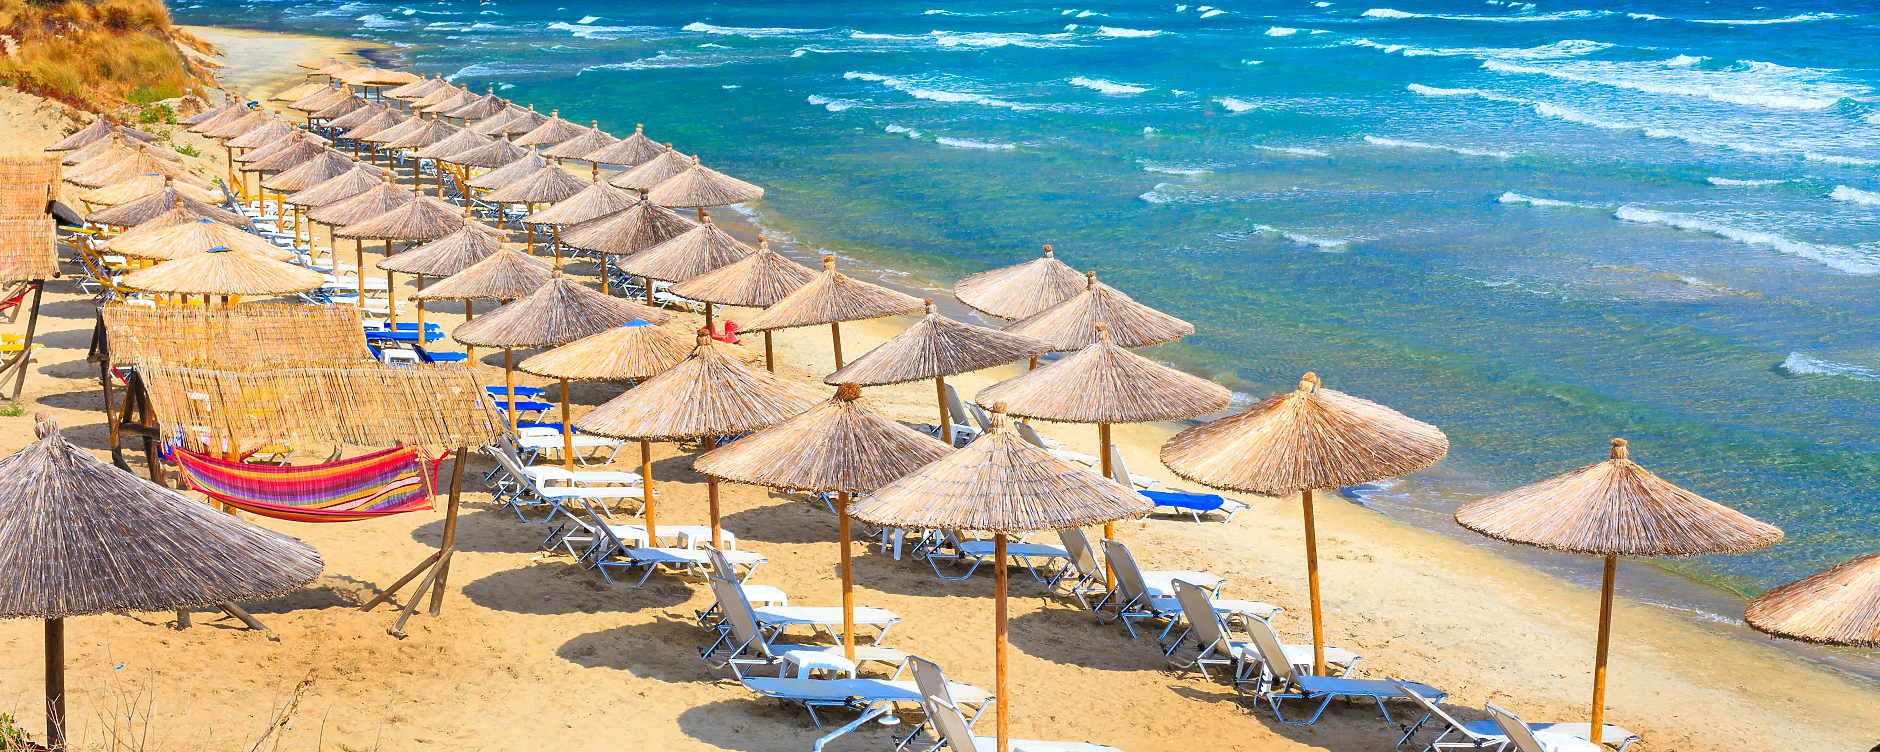 Гърция открива официално летния туристически сезон на 1 май